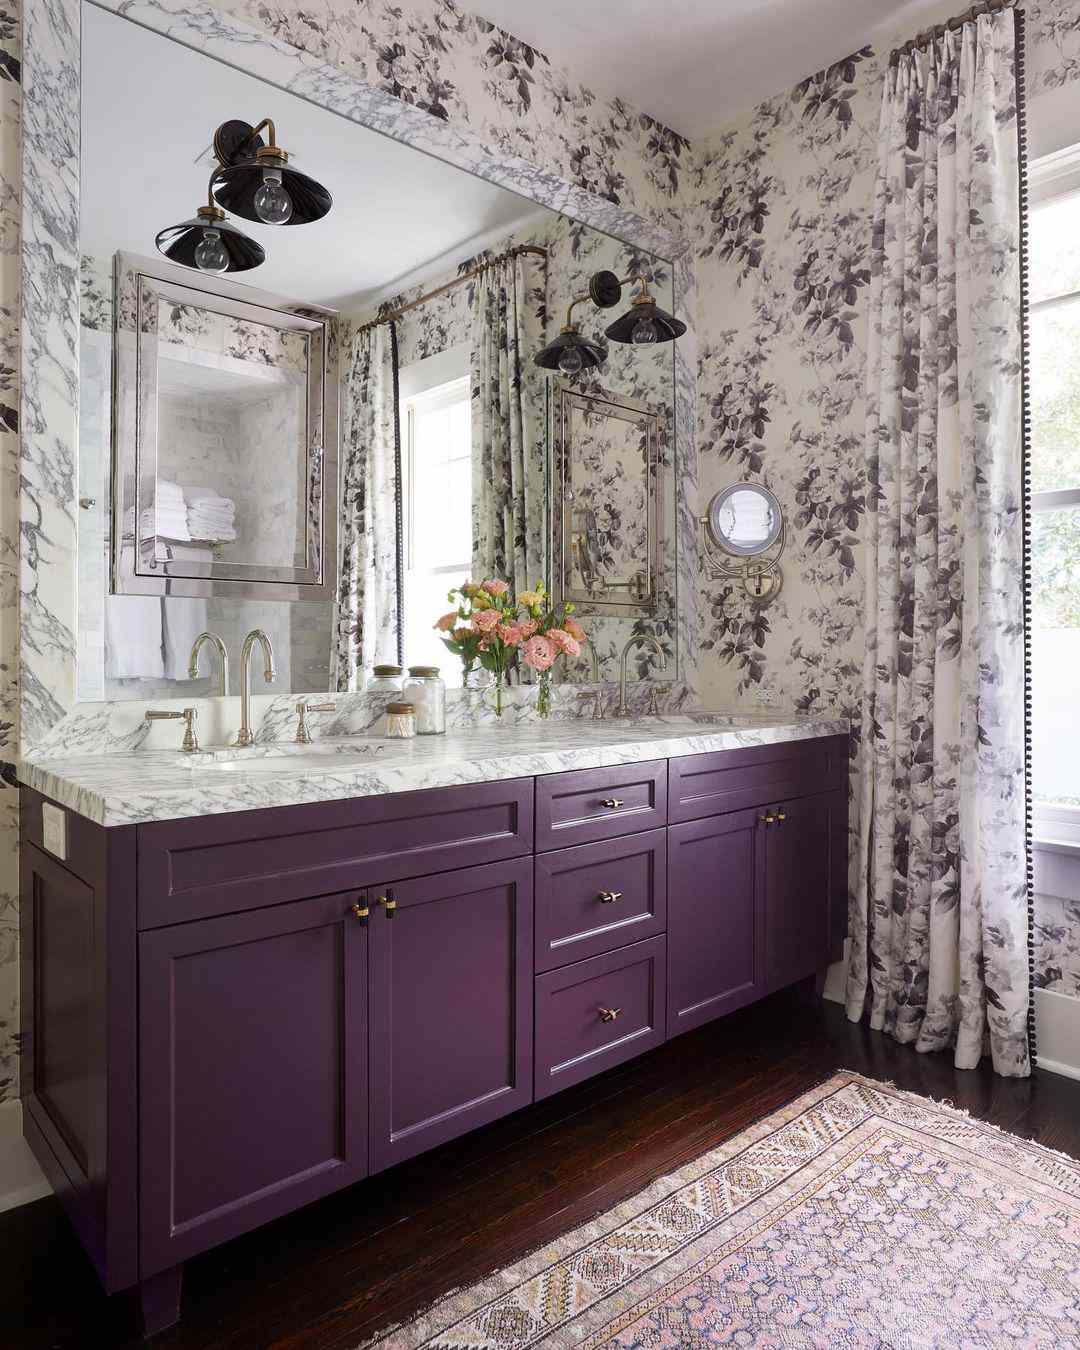 Salle de bain avec vanité violette et papier peint et rideaux assortis.